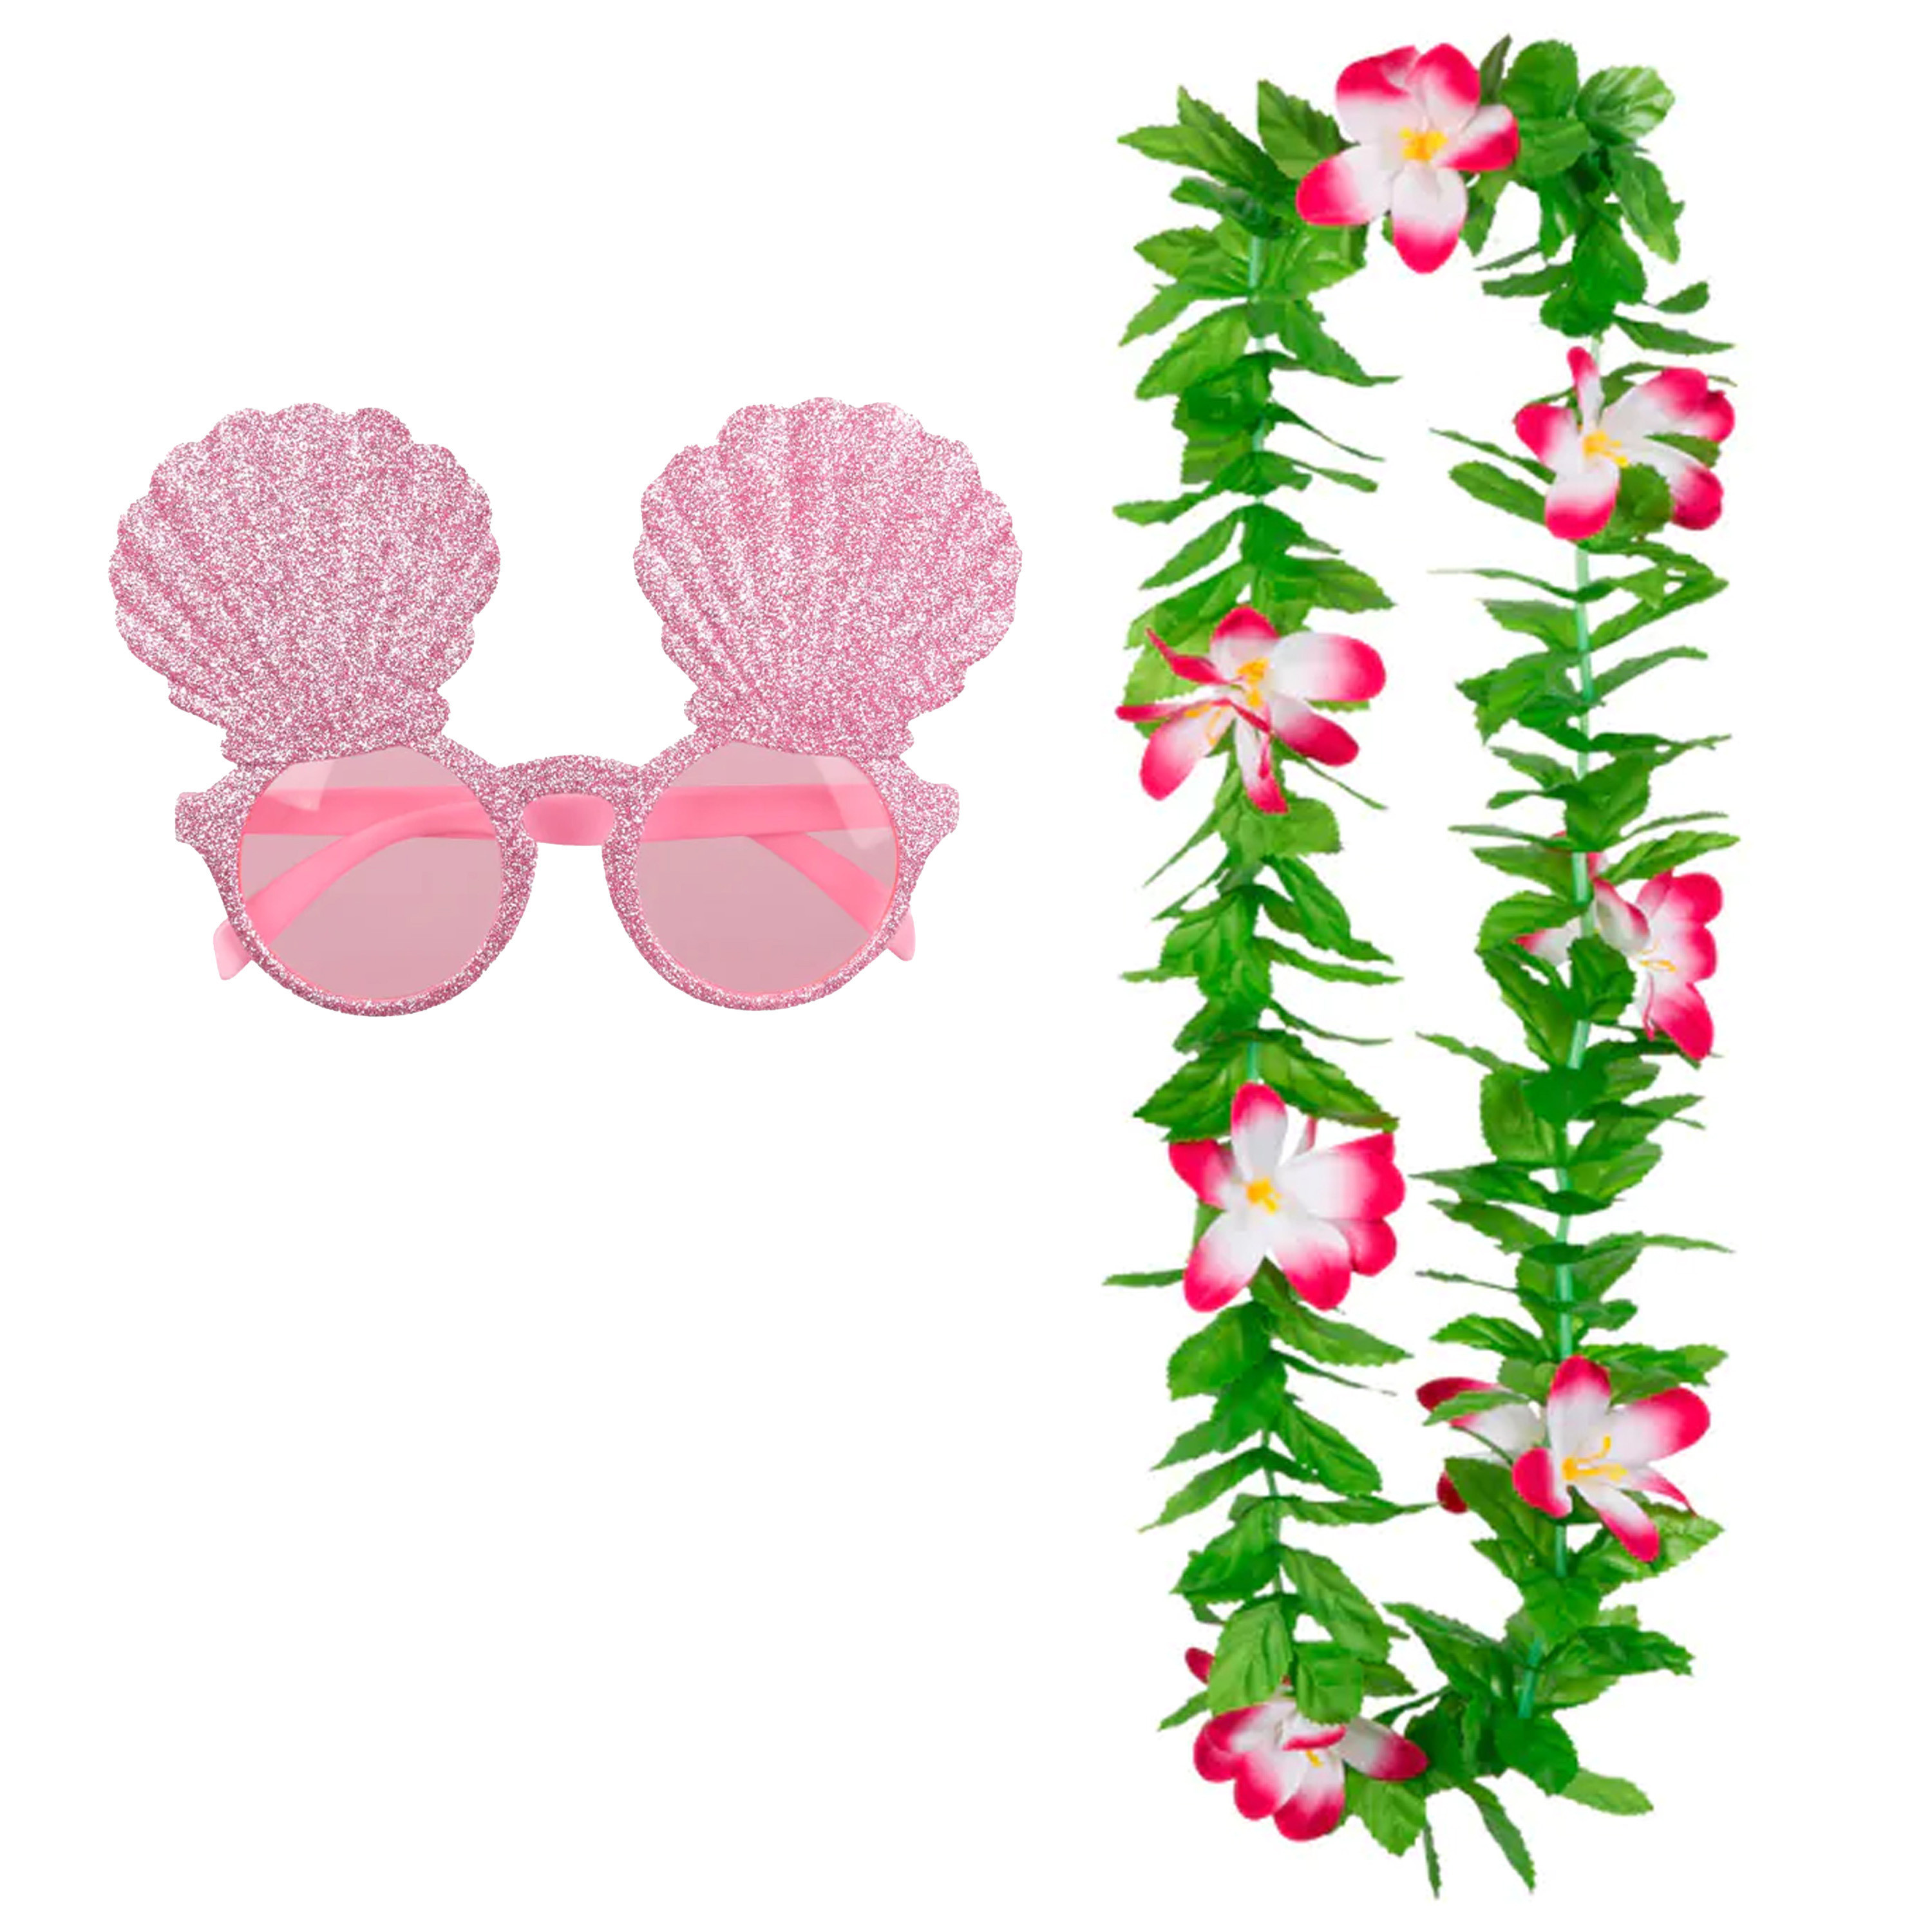 Tropische Hawaii party verkleed accessoires set - schelpen zonnebril - en bloemenkrans groen/roze